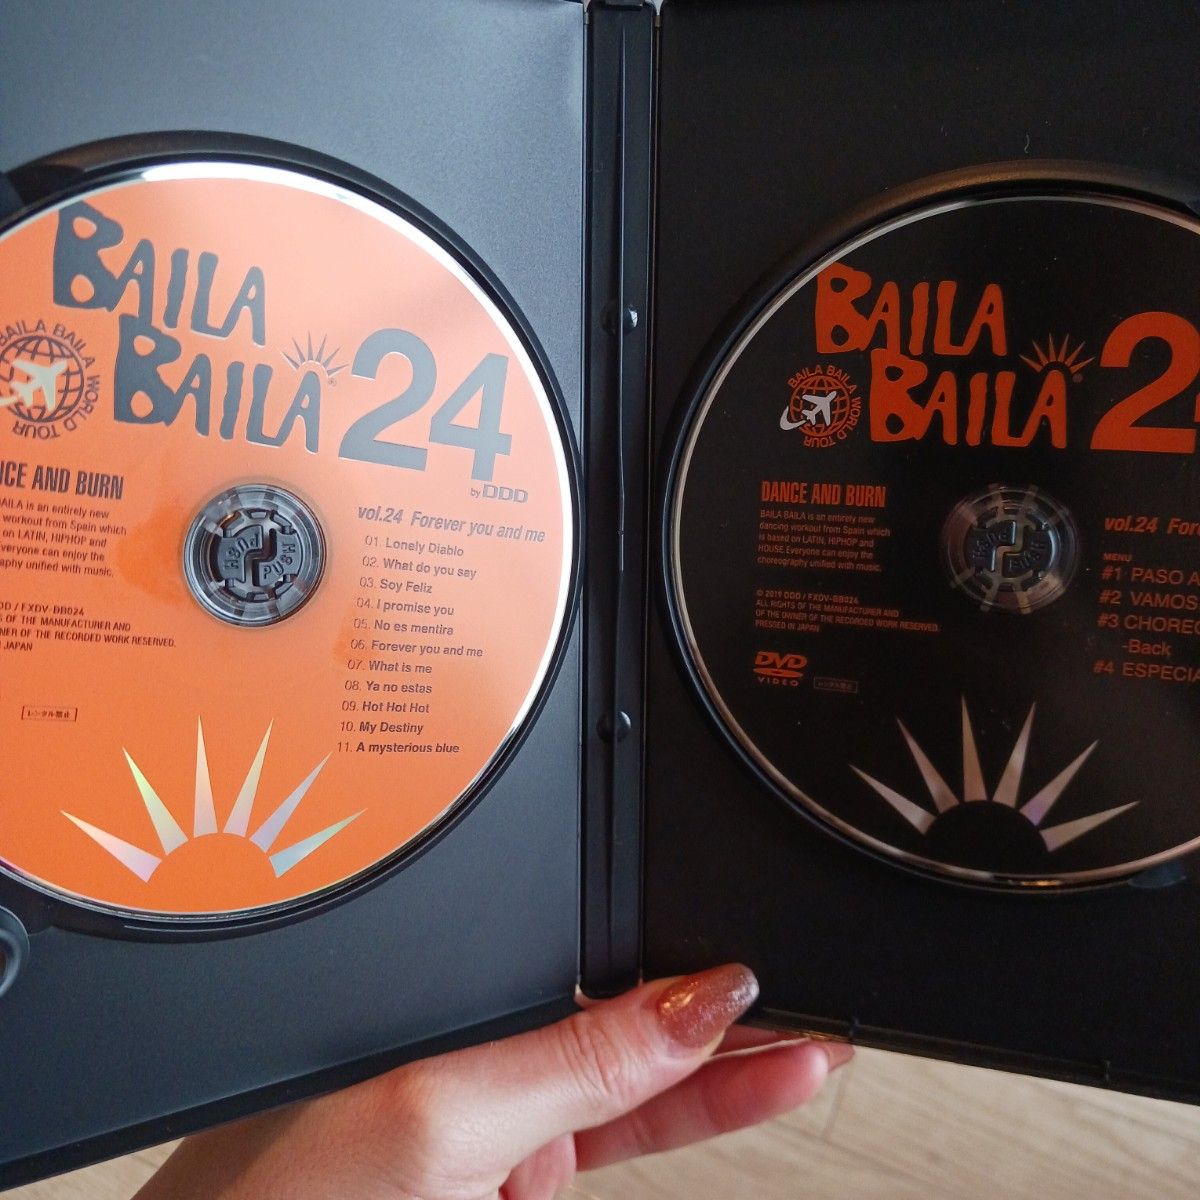 BAILABAILA24 DVD